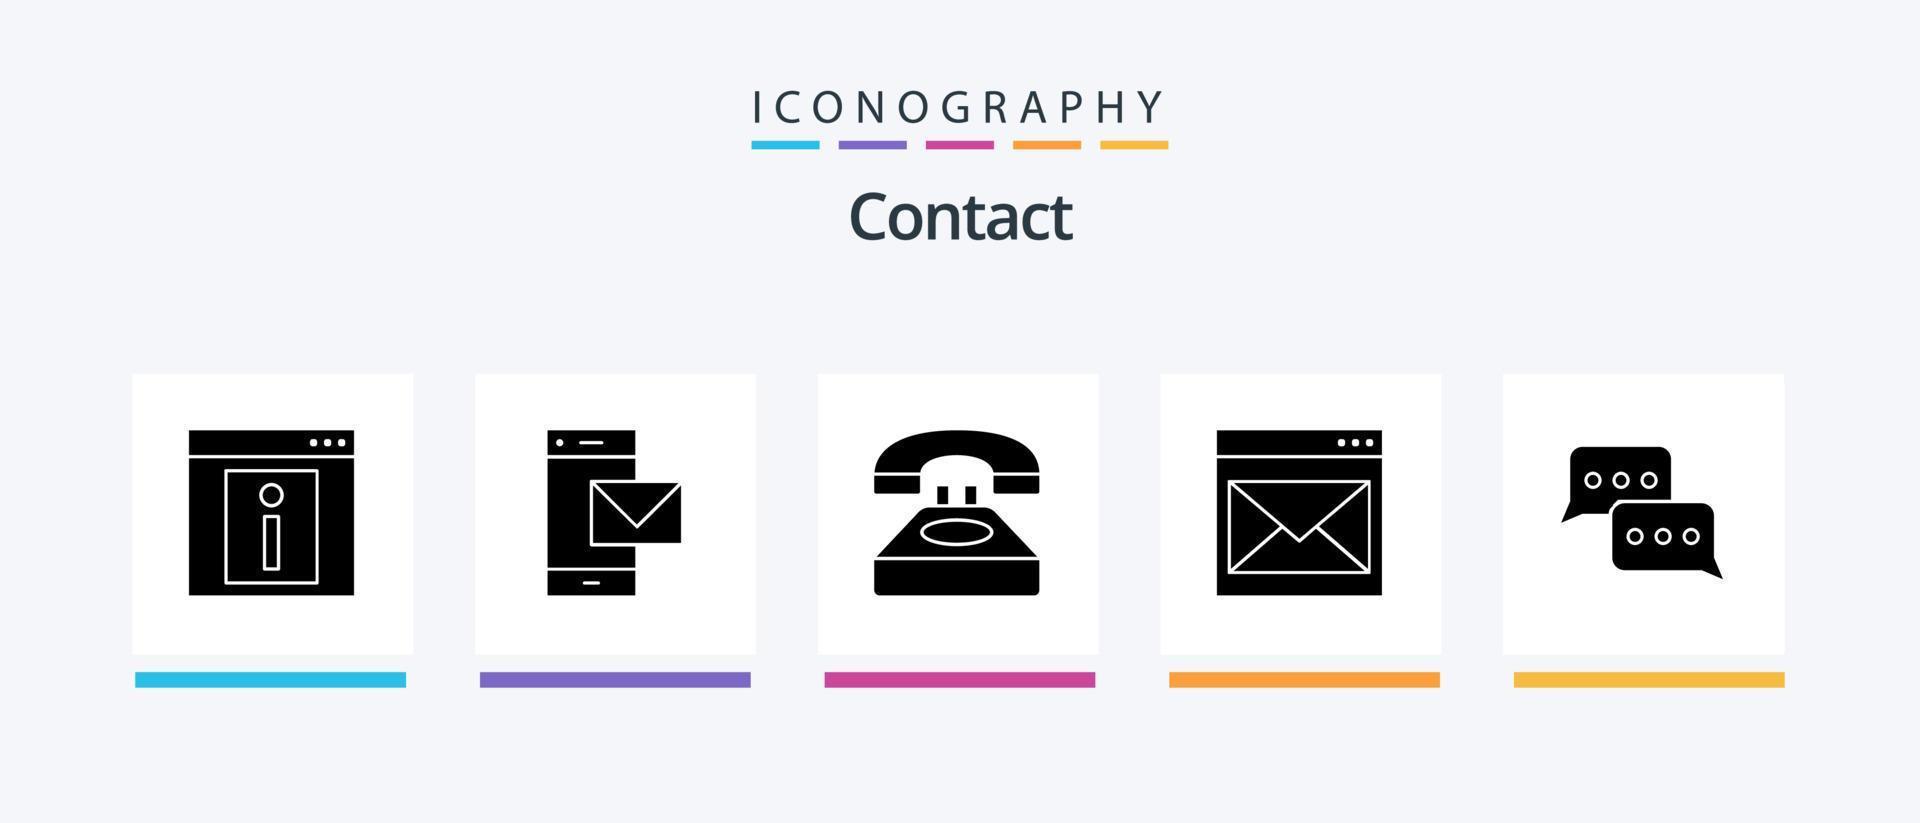 paquete de iconos de glifo 5 de contacto que incluye contacto con nosotros. comunicación. teléfono. conversacion. contacto. diseño de iconos creativos vector